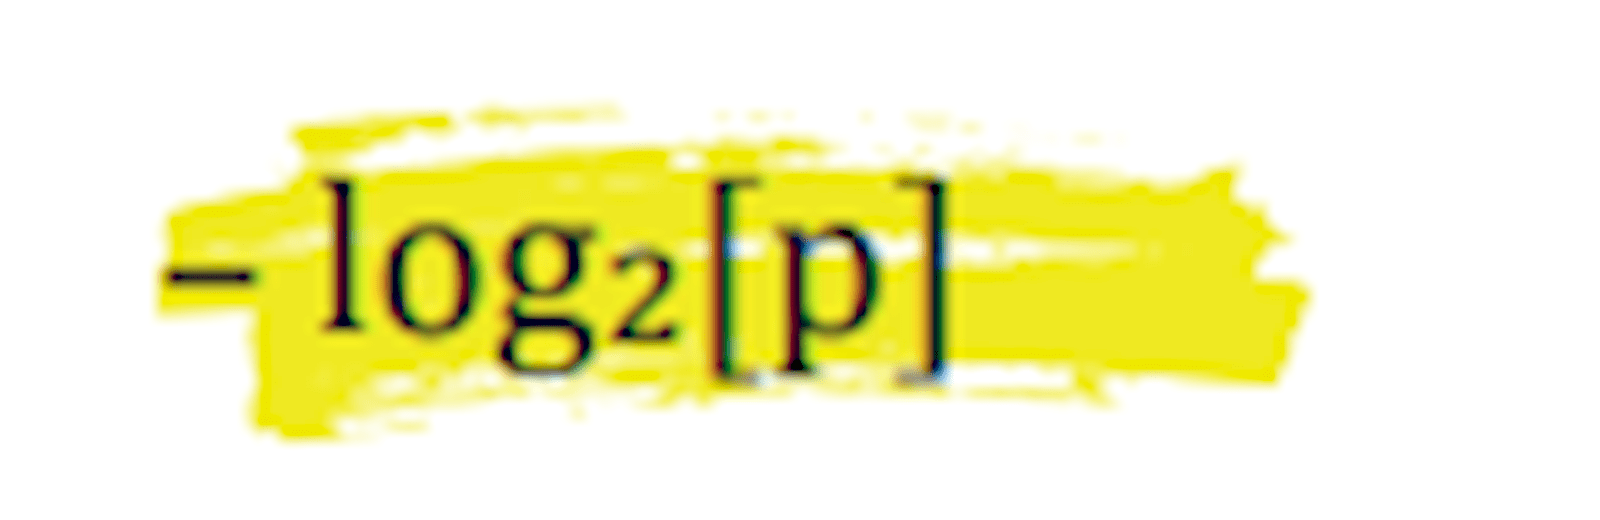 – logΜ[p] equation